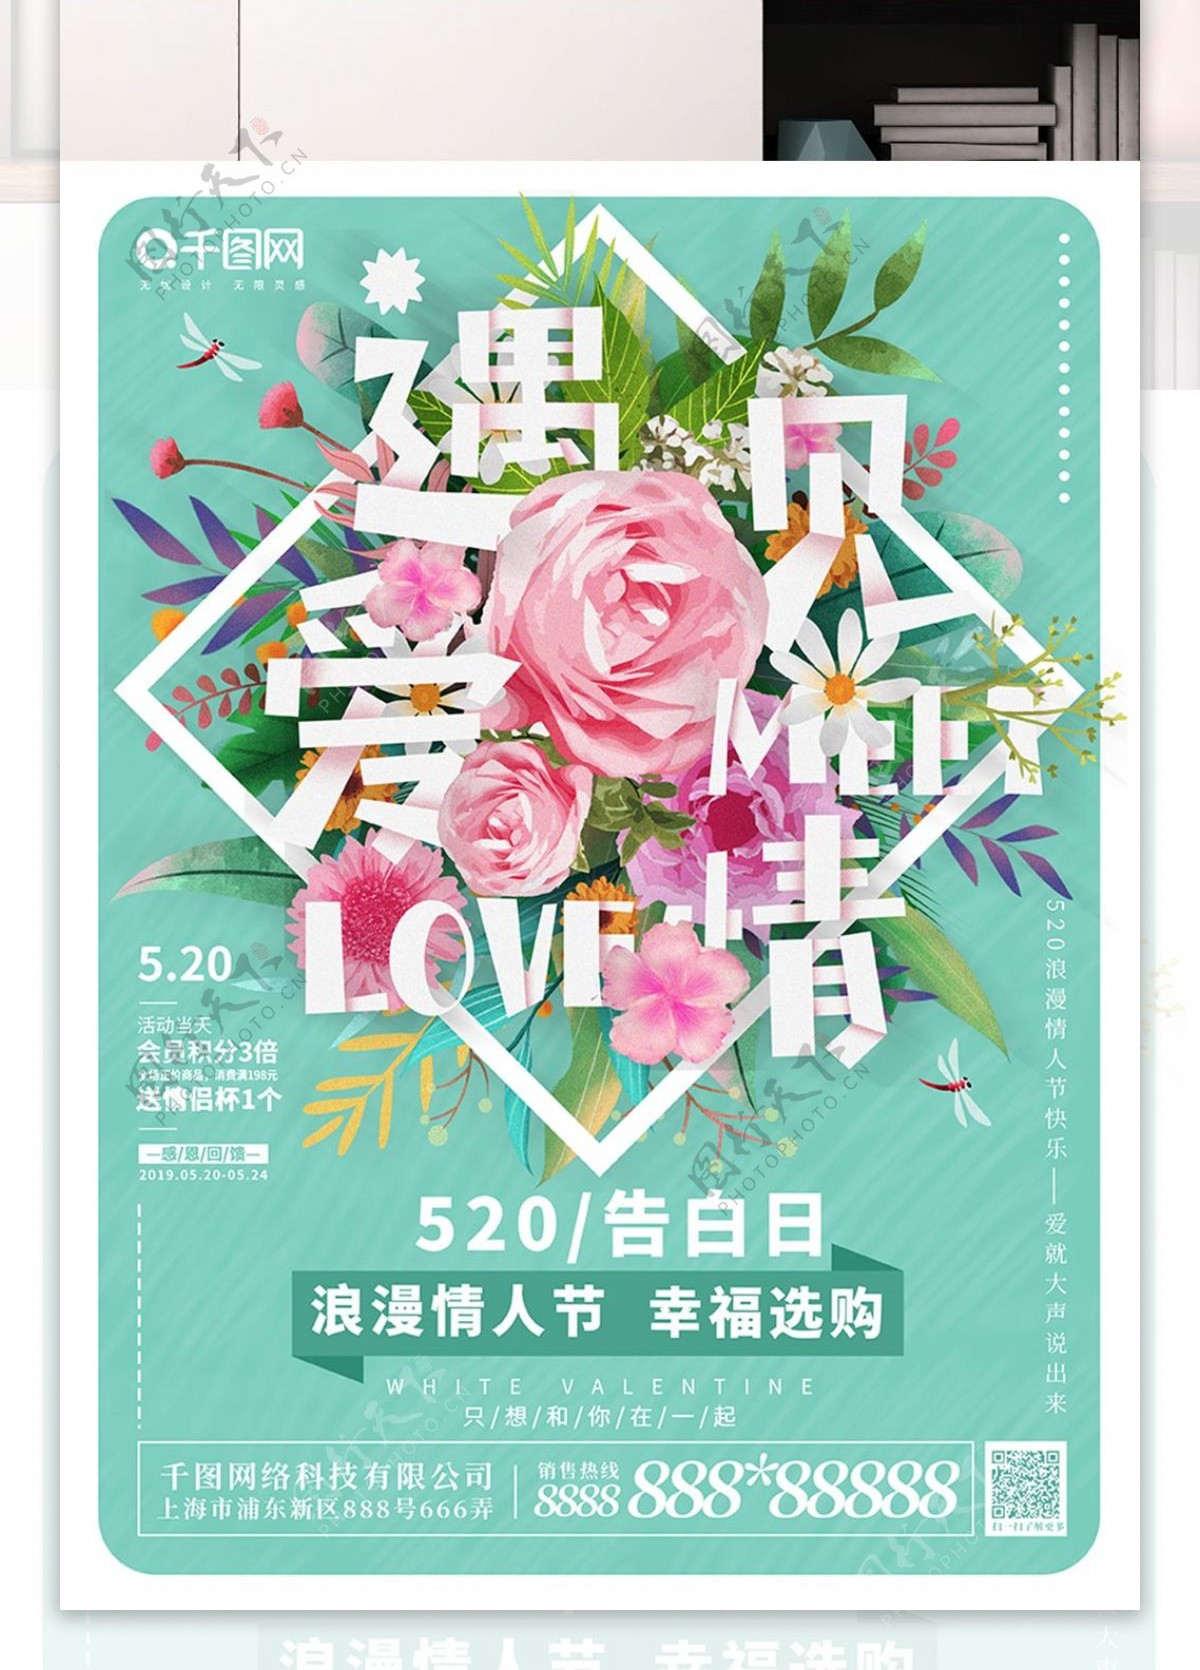 原创插画花卉字体趋势遇见爱情情人节海报